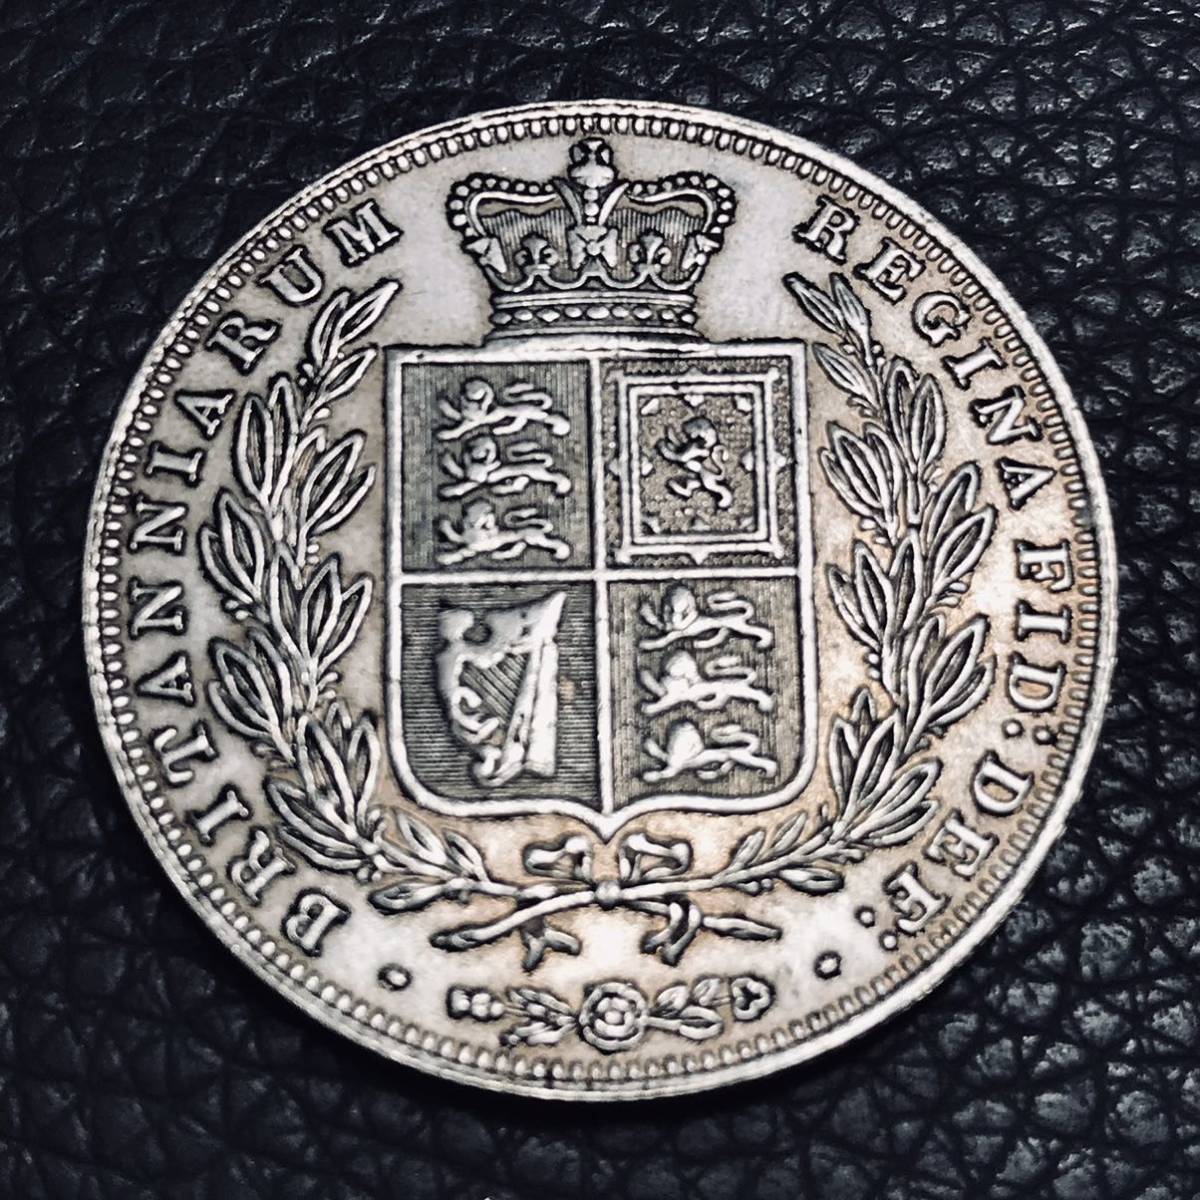 イギリス 銀貨 1840年 ヴィクトリア女王 ハノーヴァー朝第6代女王 大英帝国 古錢 古銭 の画像2